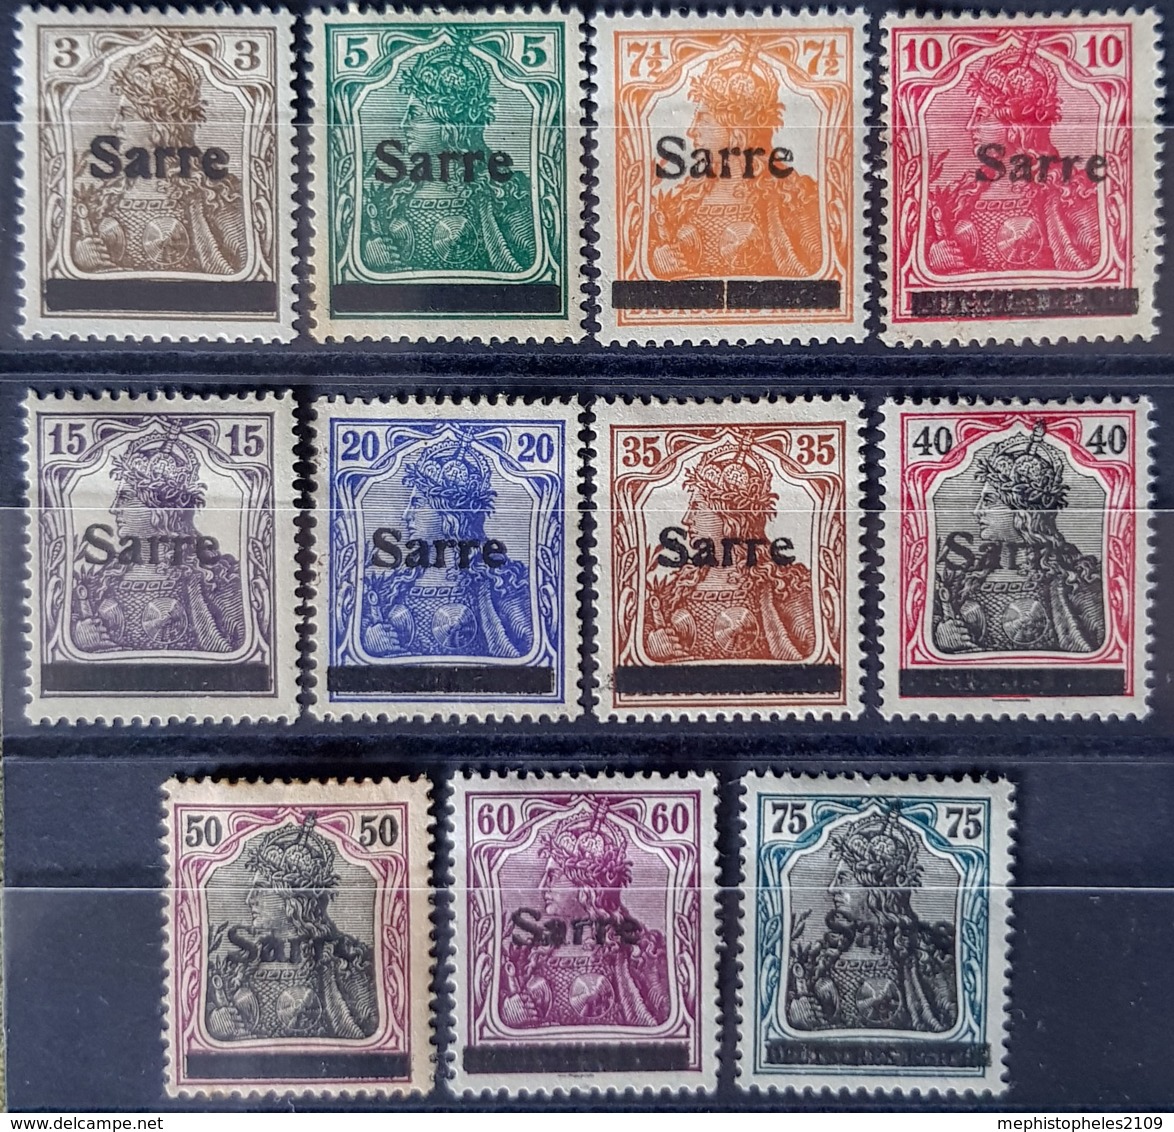 SARRE / SAARGEBIET 1920 - MLH - Mi 3, 4, 5, 6, 7, 8, 11, 12, 13, 14, 15 - Neufs